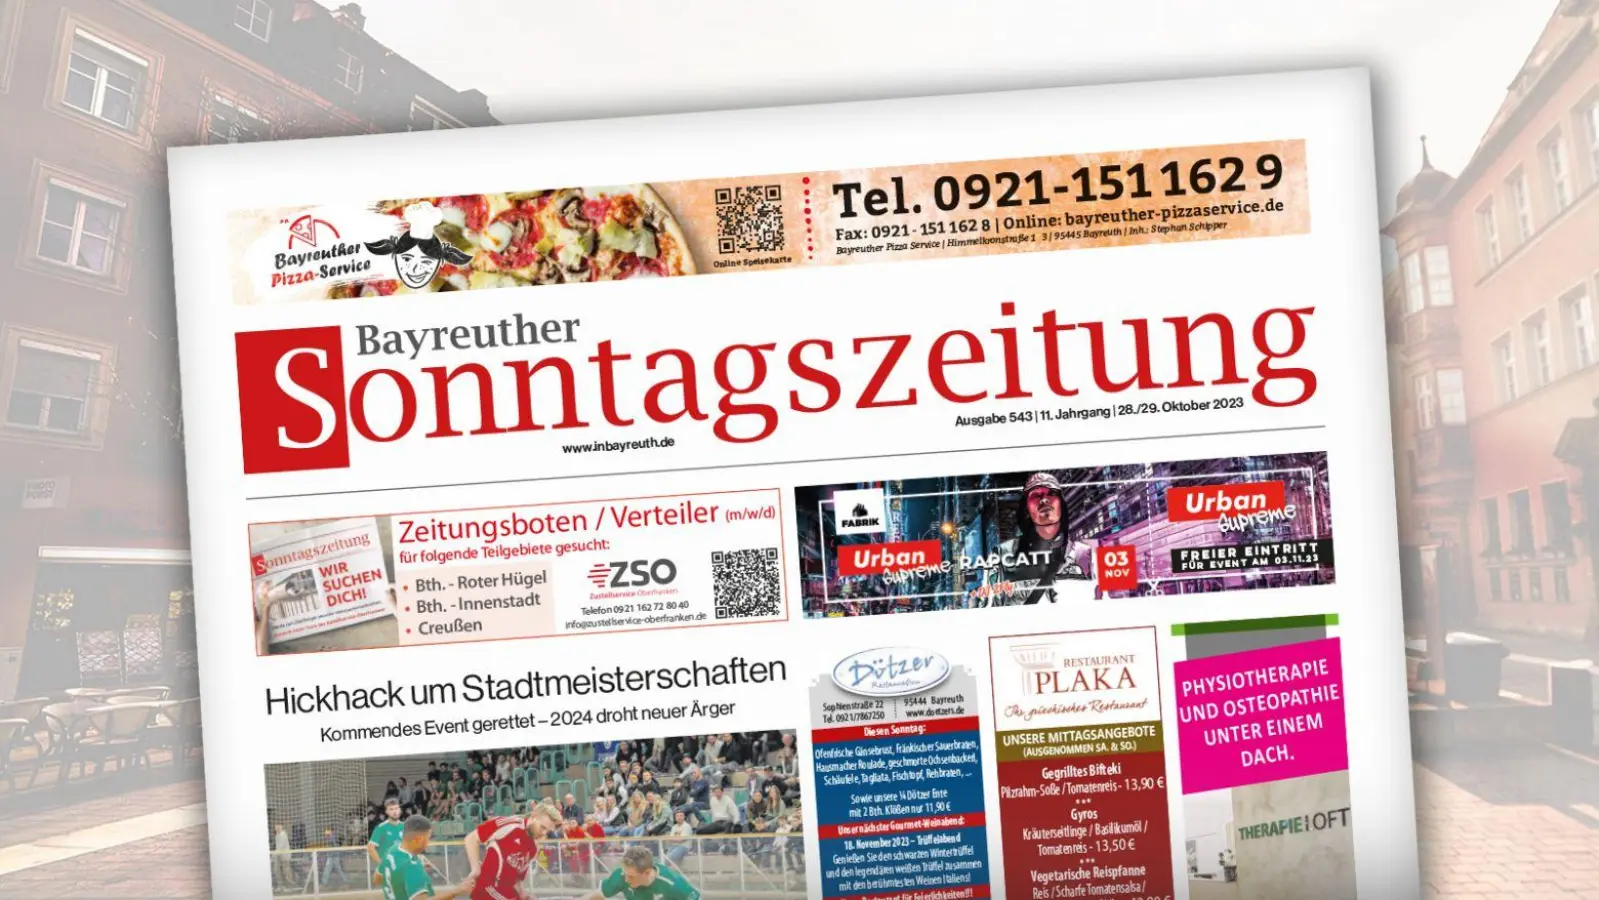 Die Bayreuther Sonntagszeitung vom 29. Oktober 2023. (Foto: red)